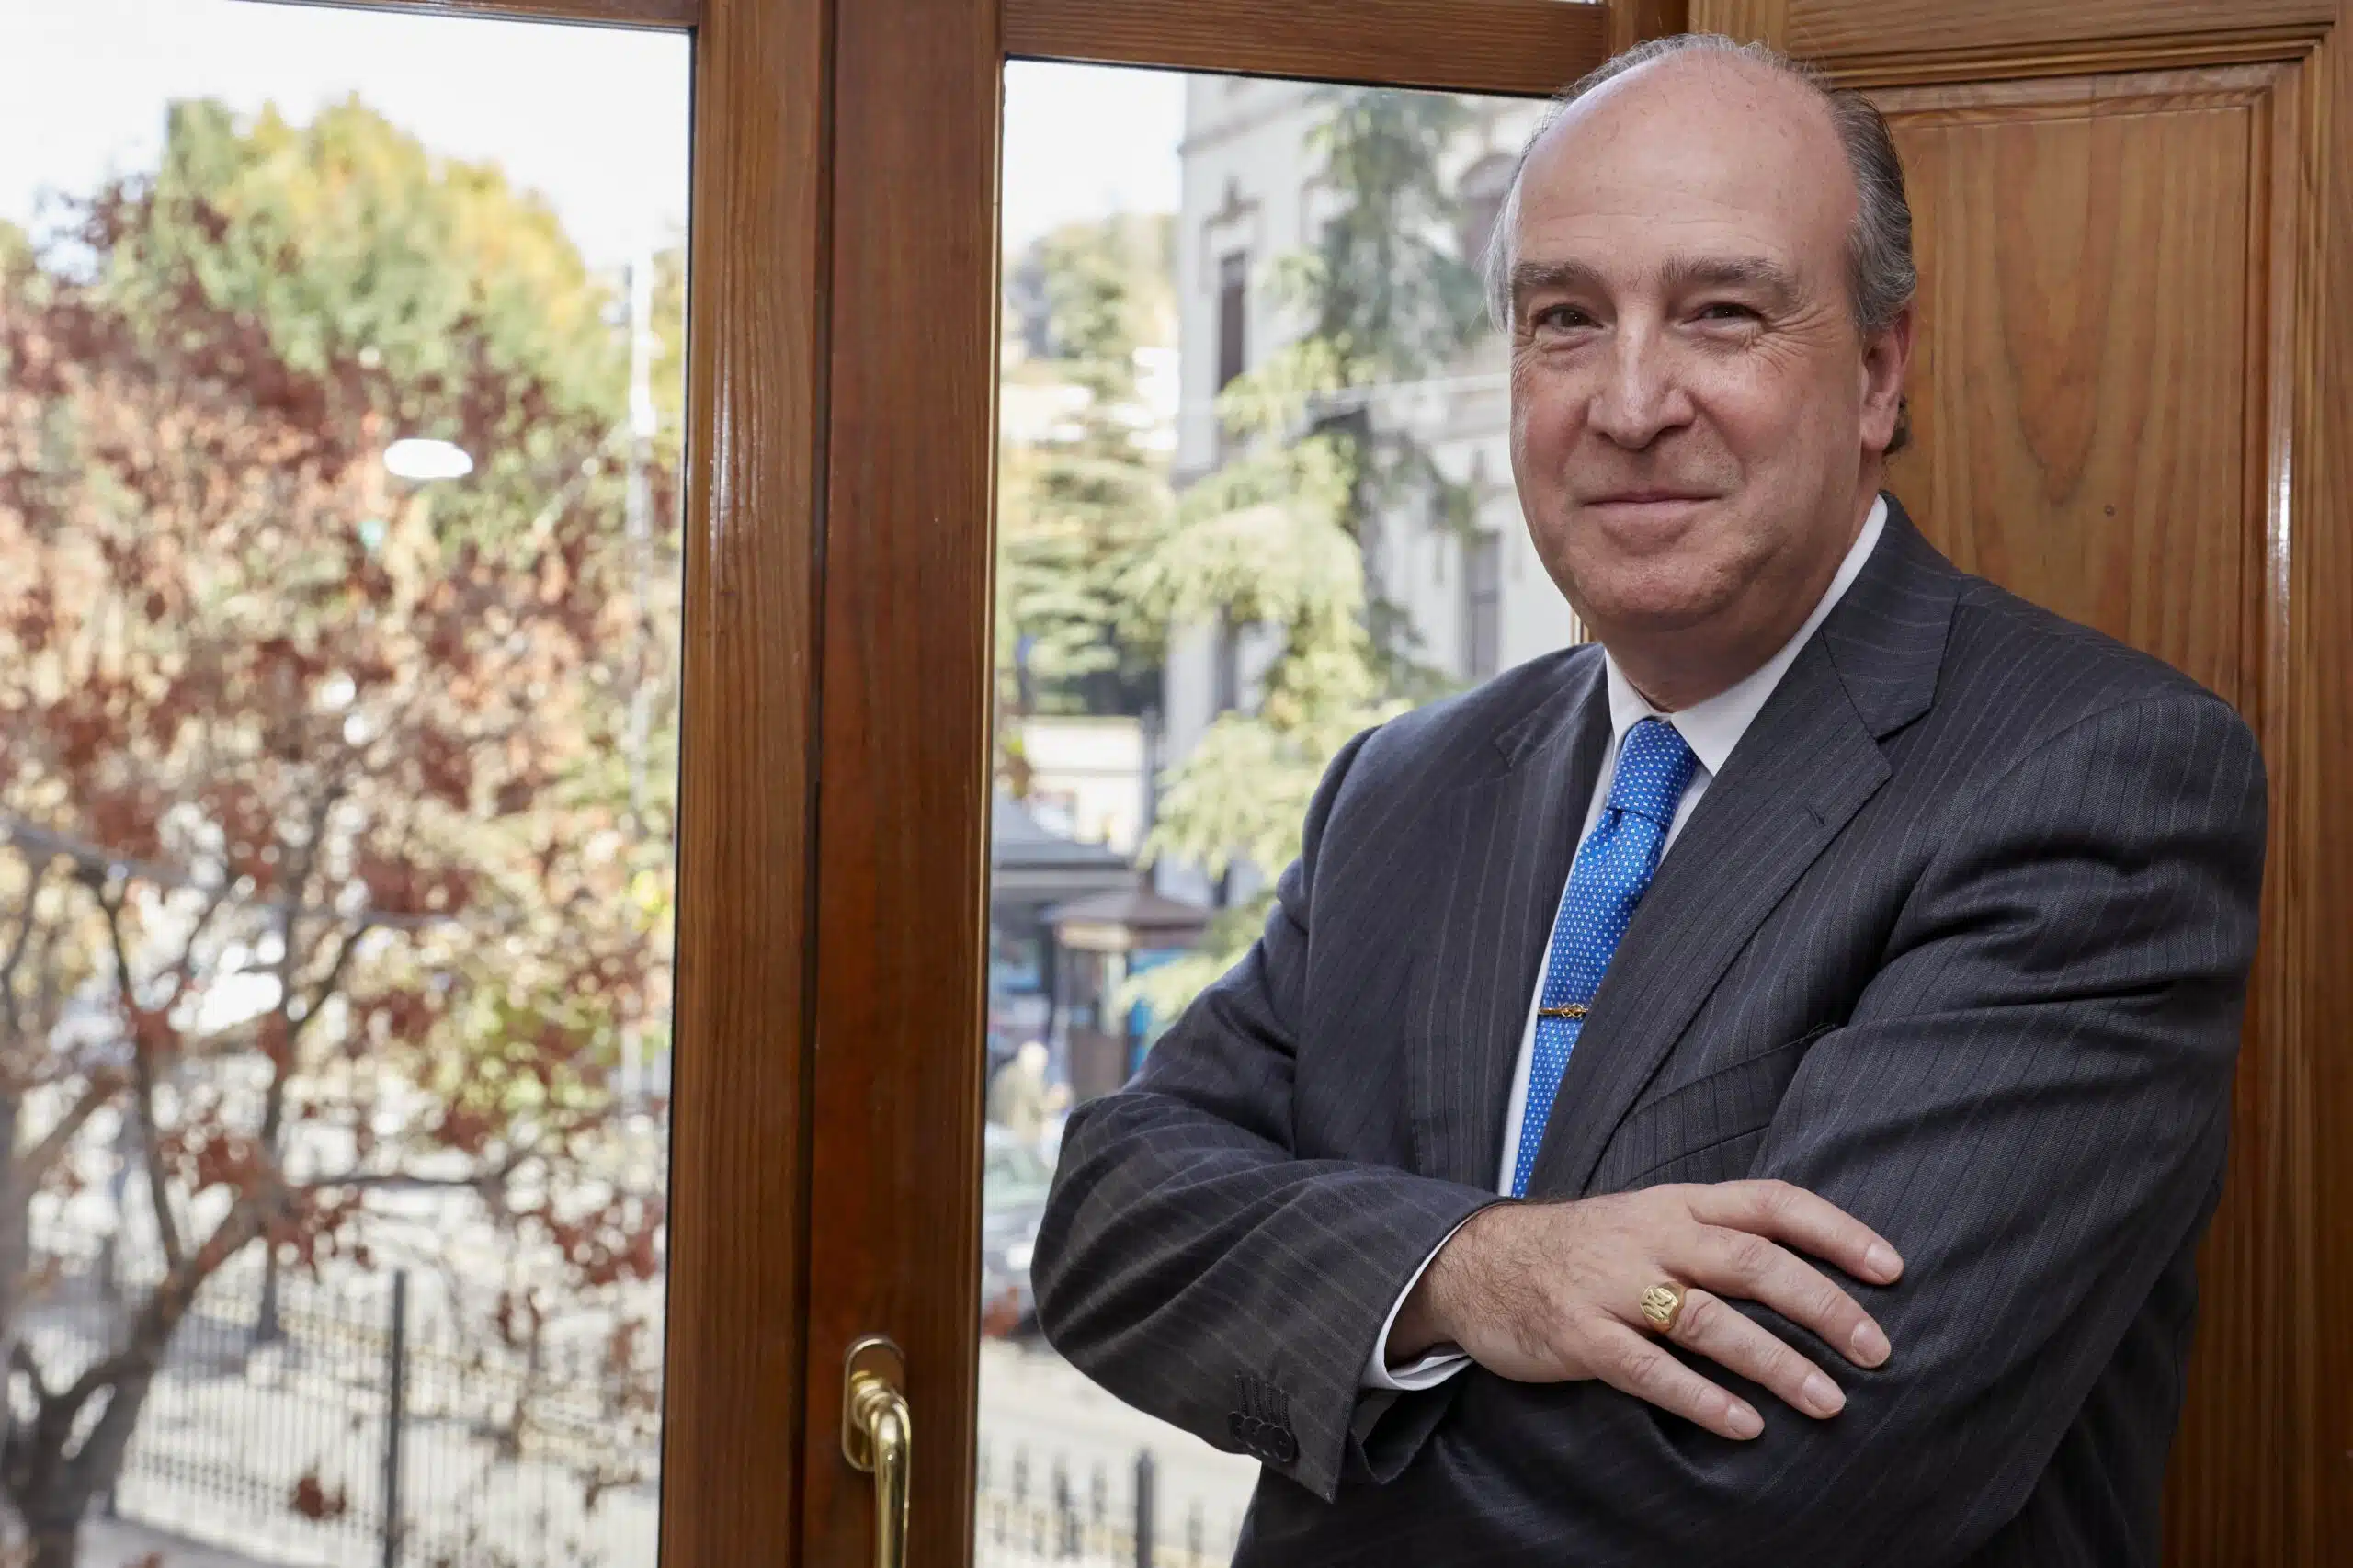 Entrevista| Juan Ramón Medina (UNIR) da las claves del Derecho Tributario: “Si se conoce el qué, pero no el cómo, no se obtendrá el éxito”